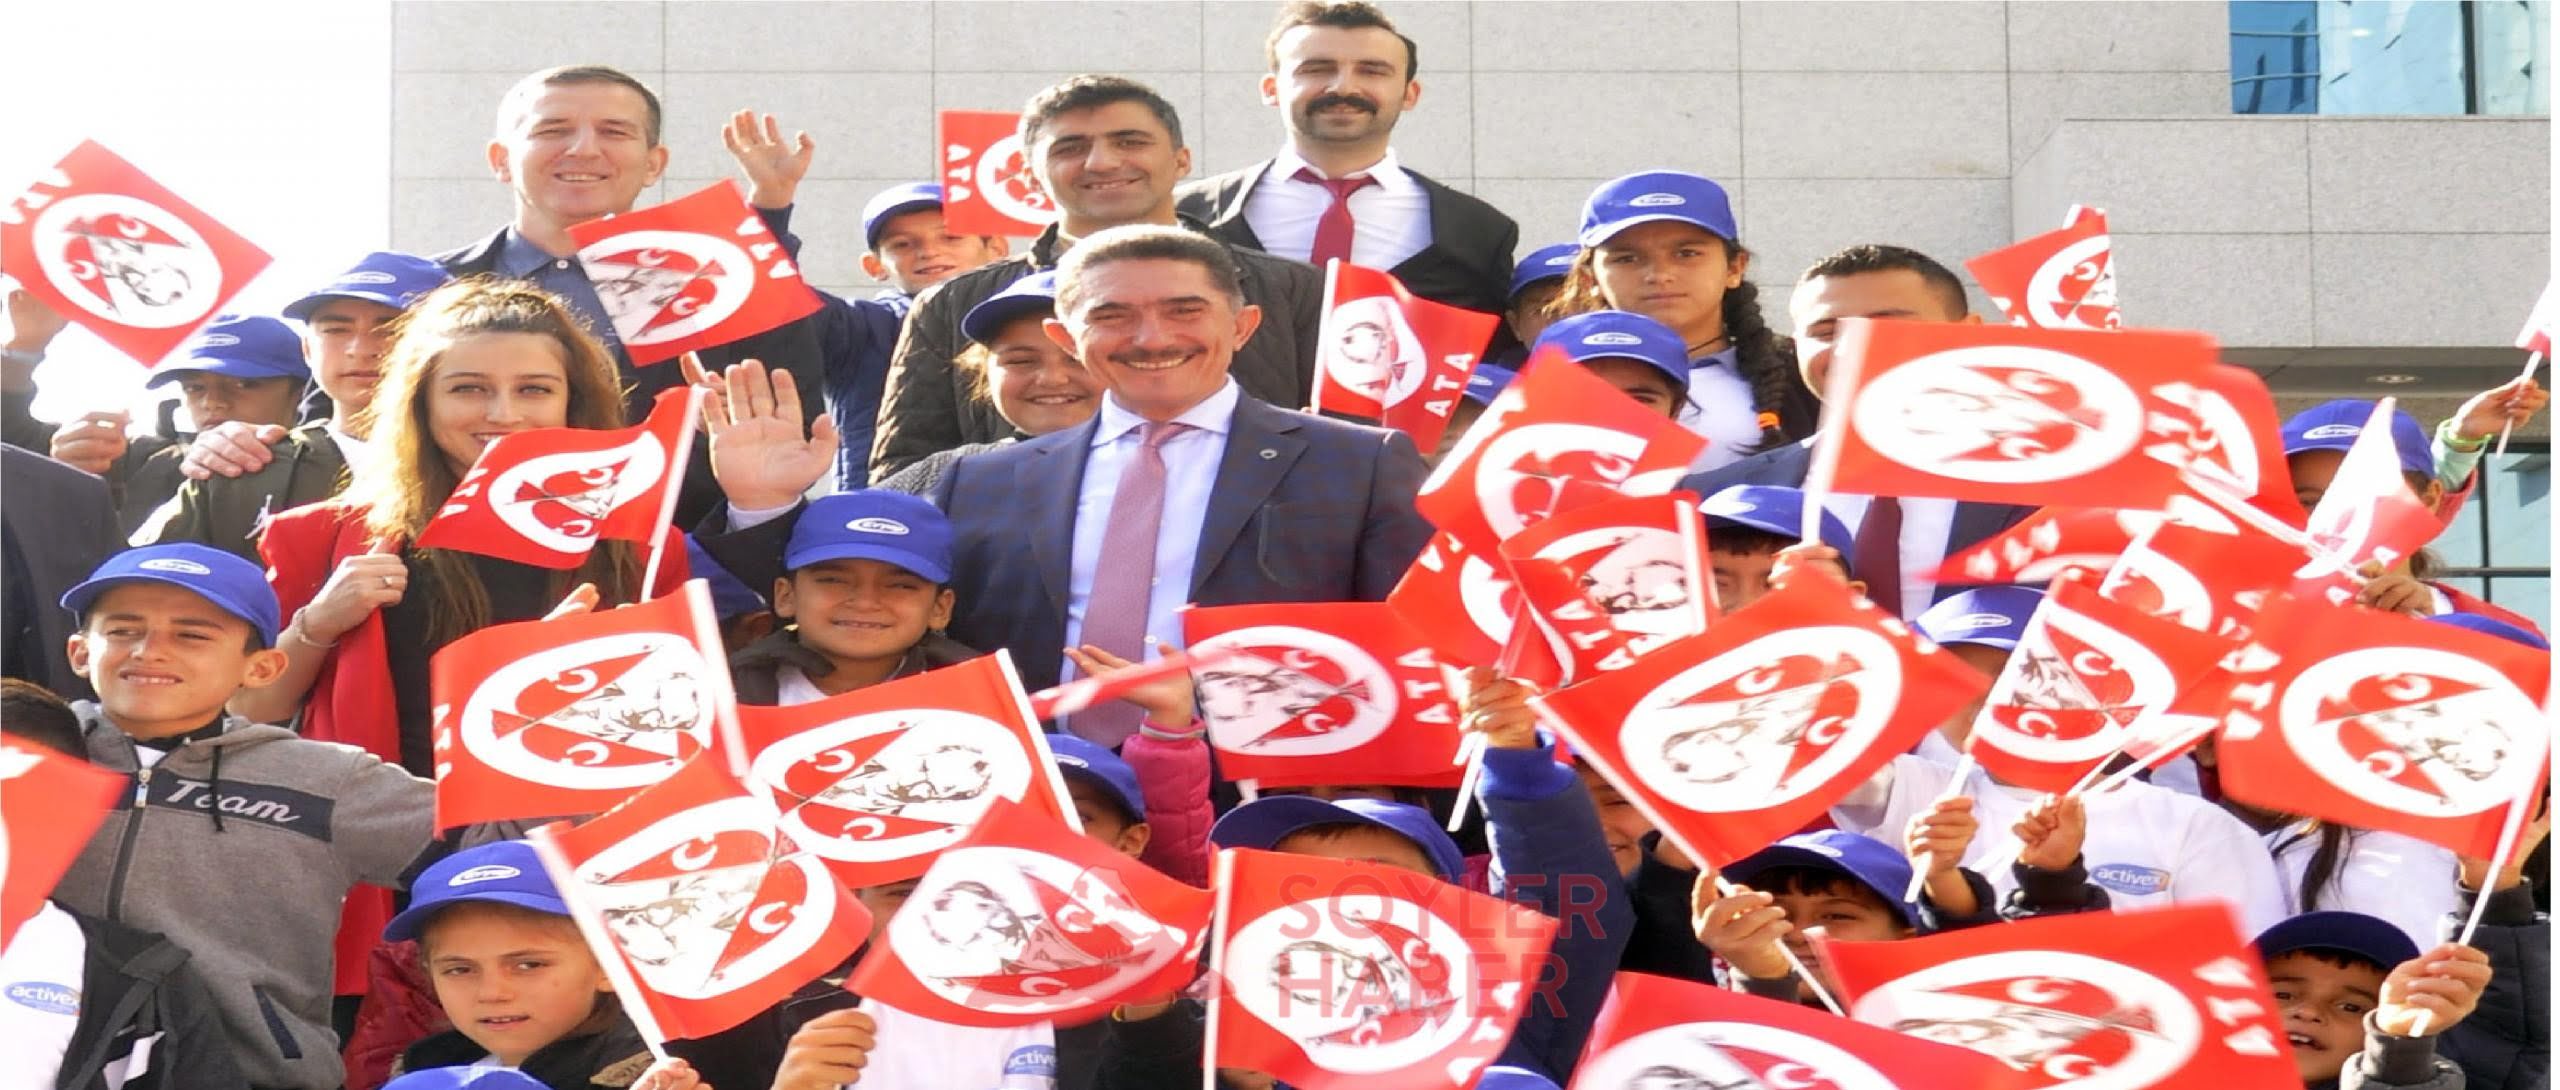 AK Parti Ağrı Milletvekili Ekrem Çelebi;1920'de kurulan TBMM'nin kuruluşunun 100'üncü yılı ve 23 Nisan Ulusal Egemenlik ve Çocuk Bayramı dolayısıyla bir mesaj yayımladı